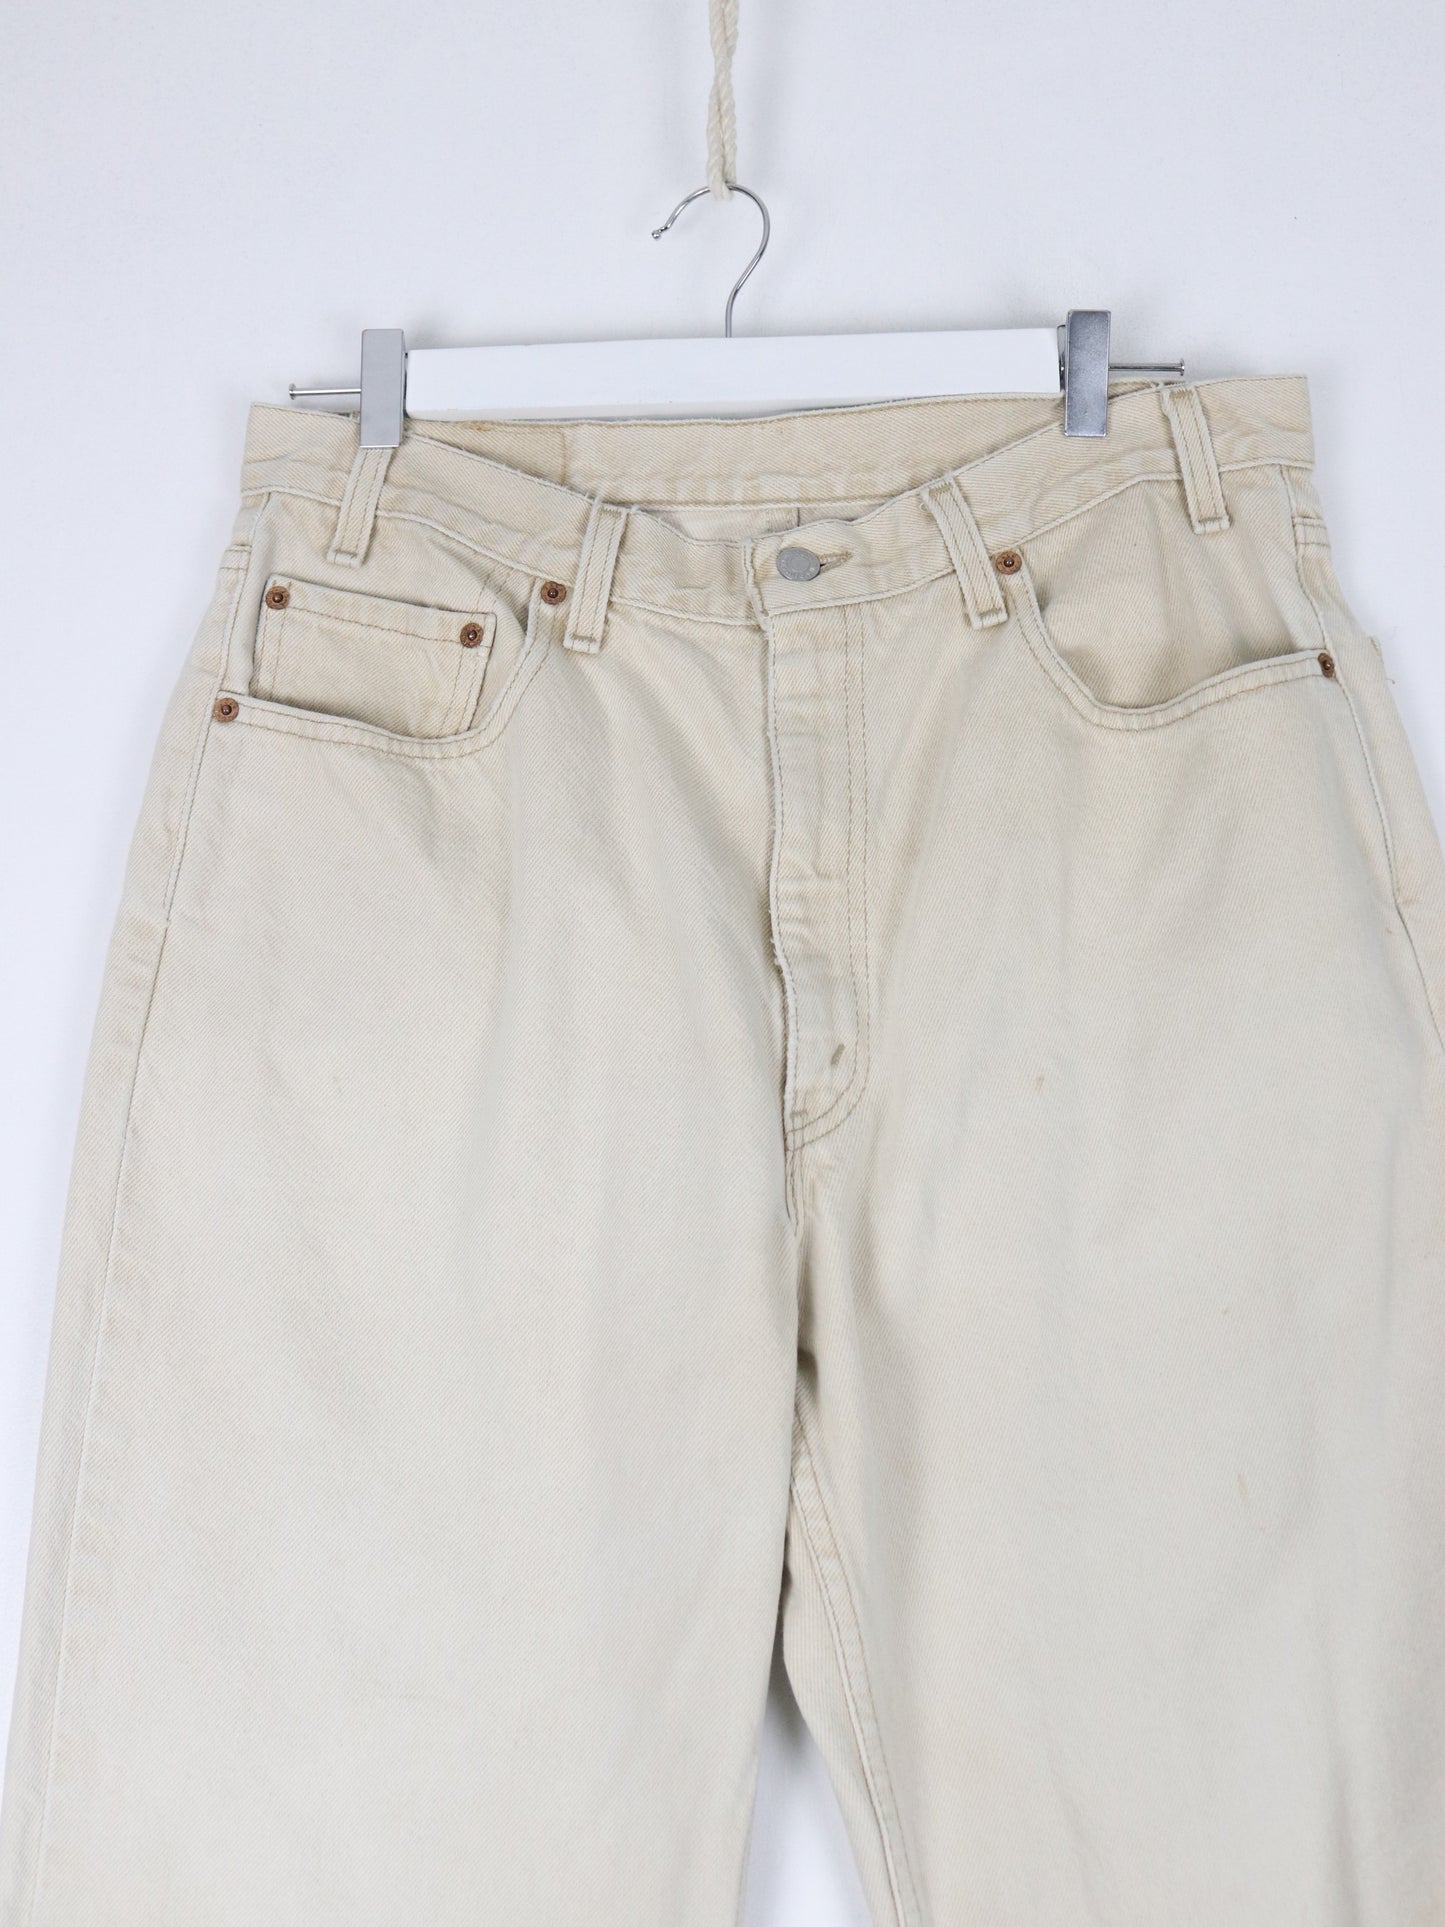 Vintage Levi's Pants Fits Mens 33 x 29 Beige Denim Jeans Relaxed Fit